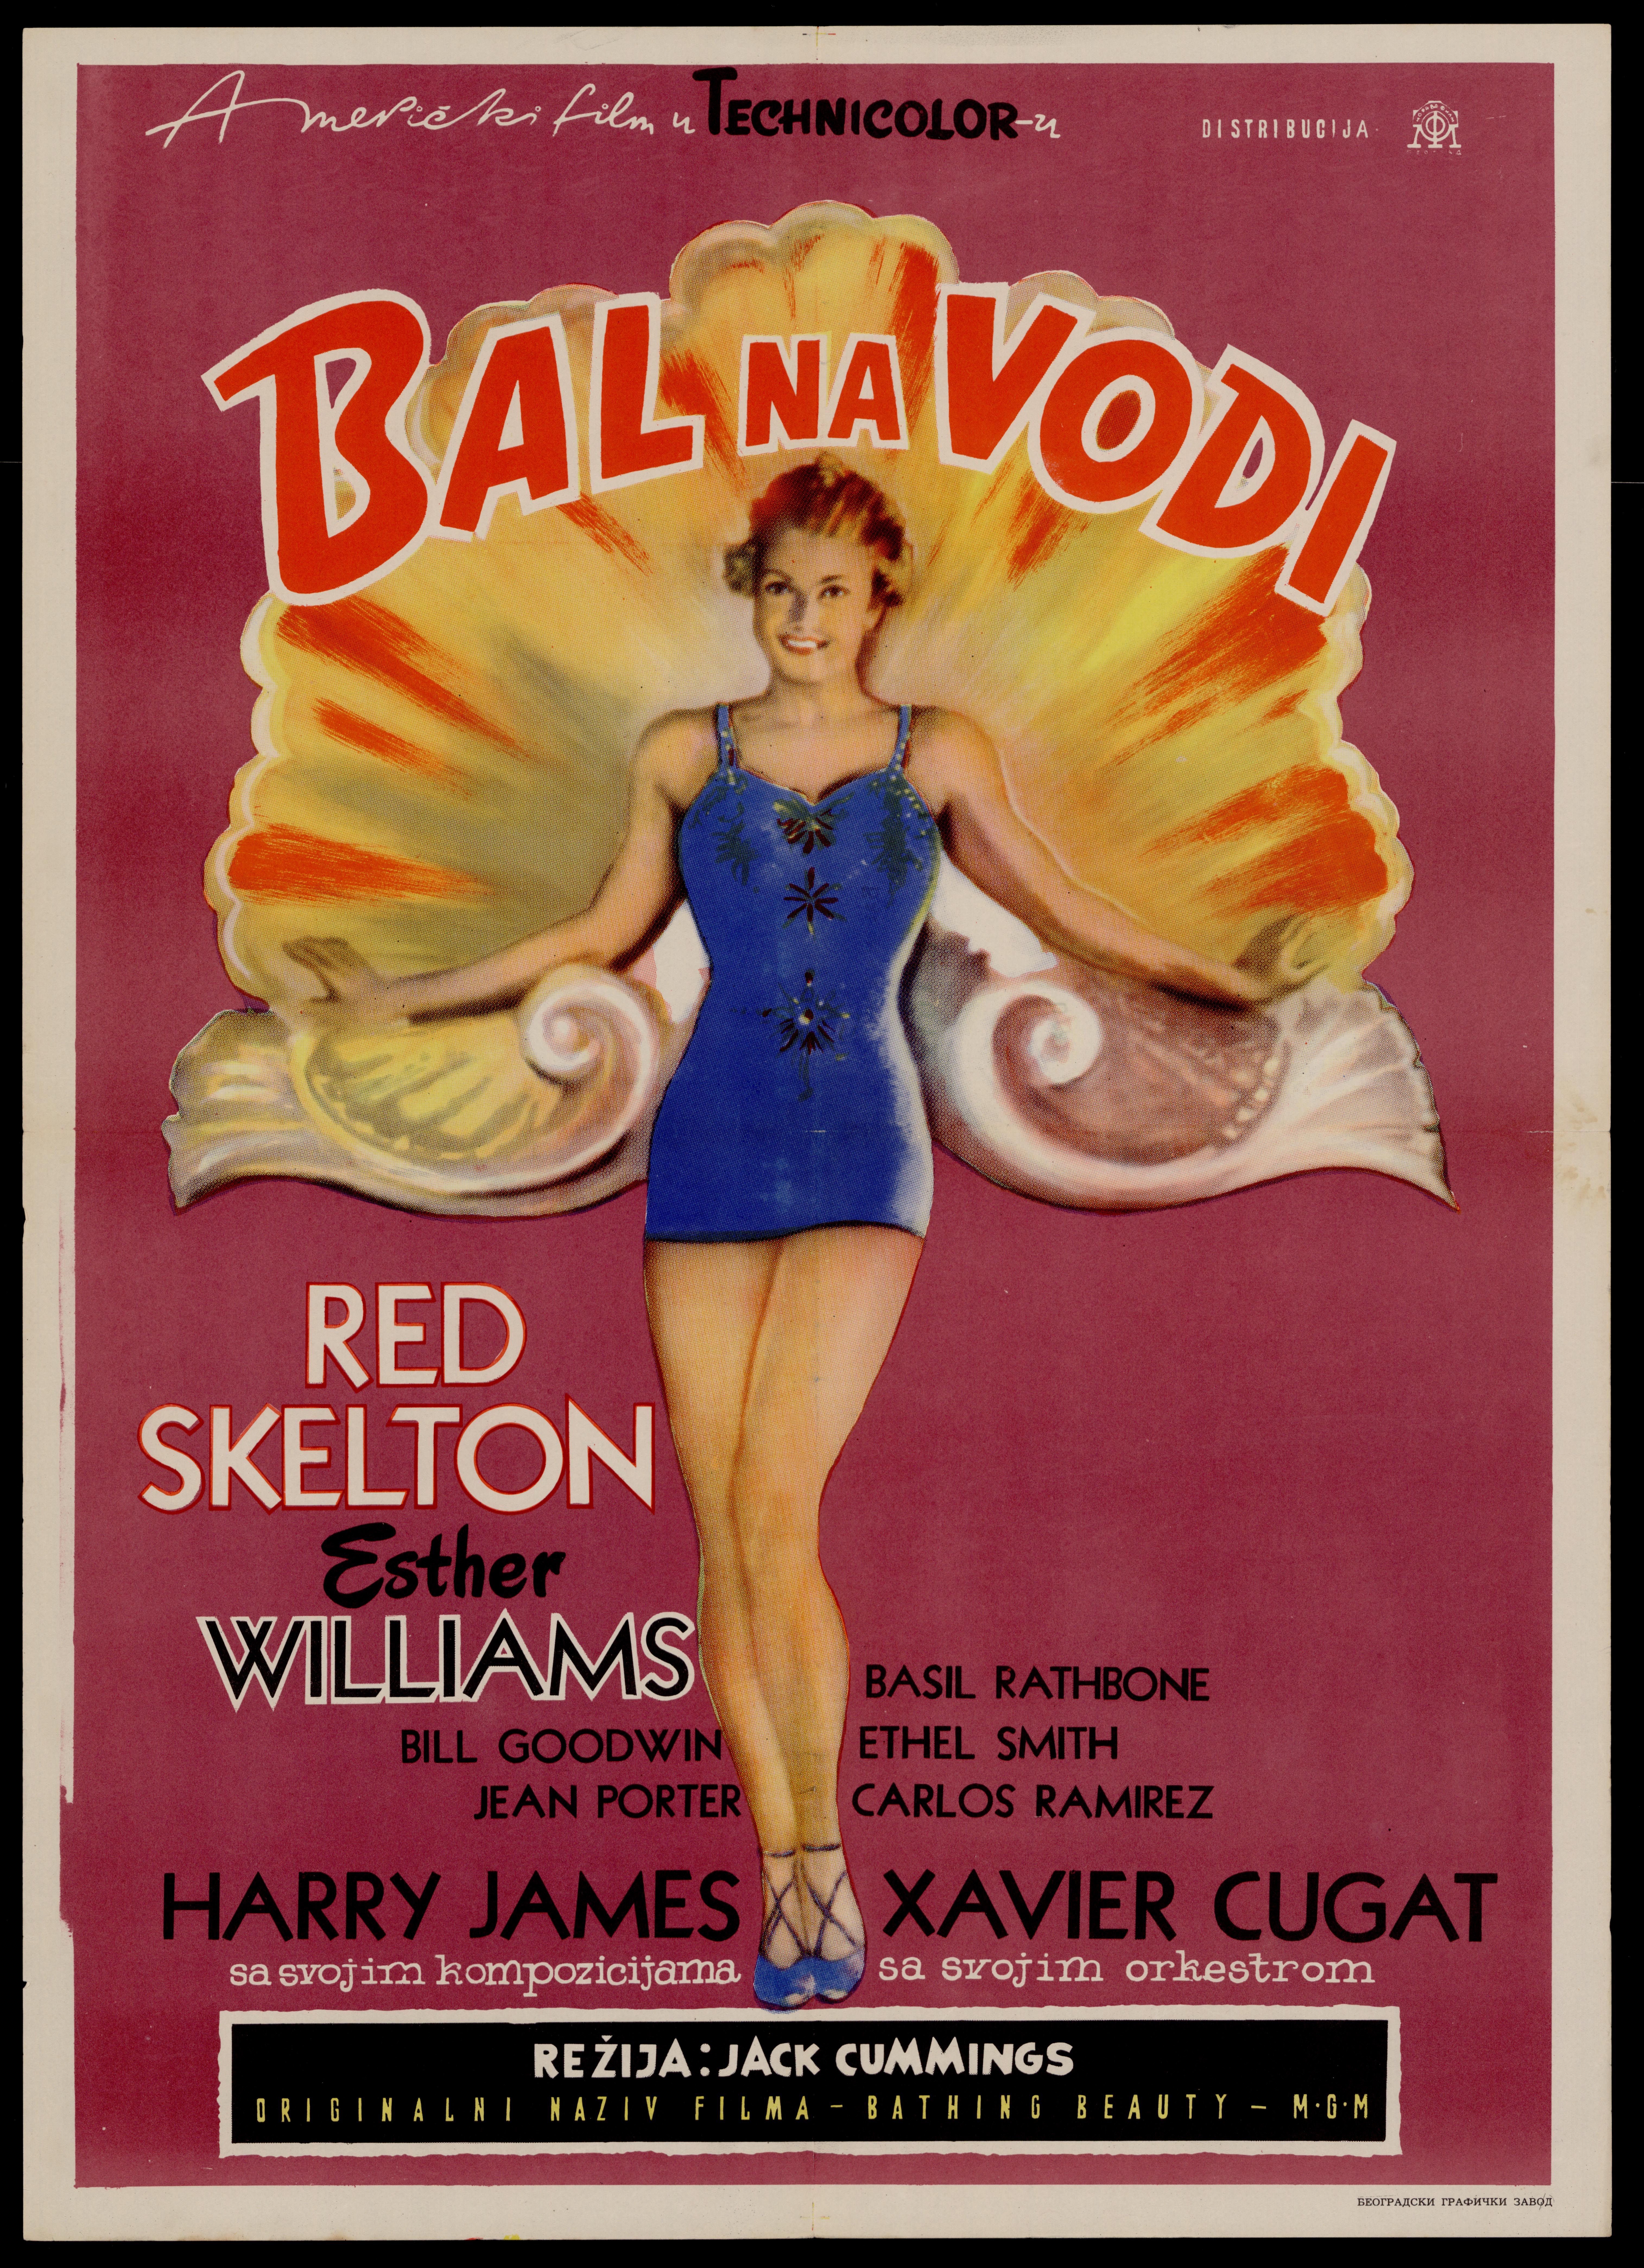 Plakat za film Bal na vodi (1944.), čiji je utjecaj kritizirala Ideološka komisija.